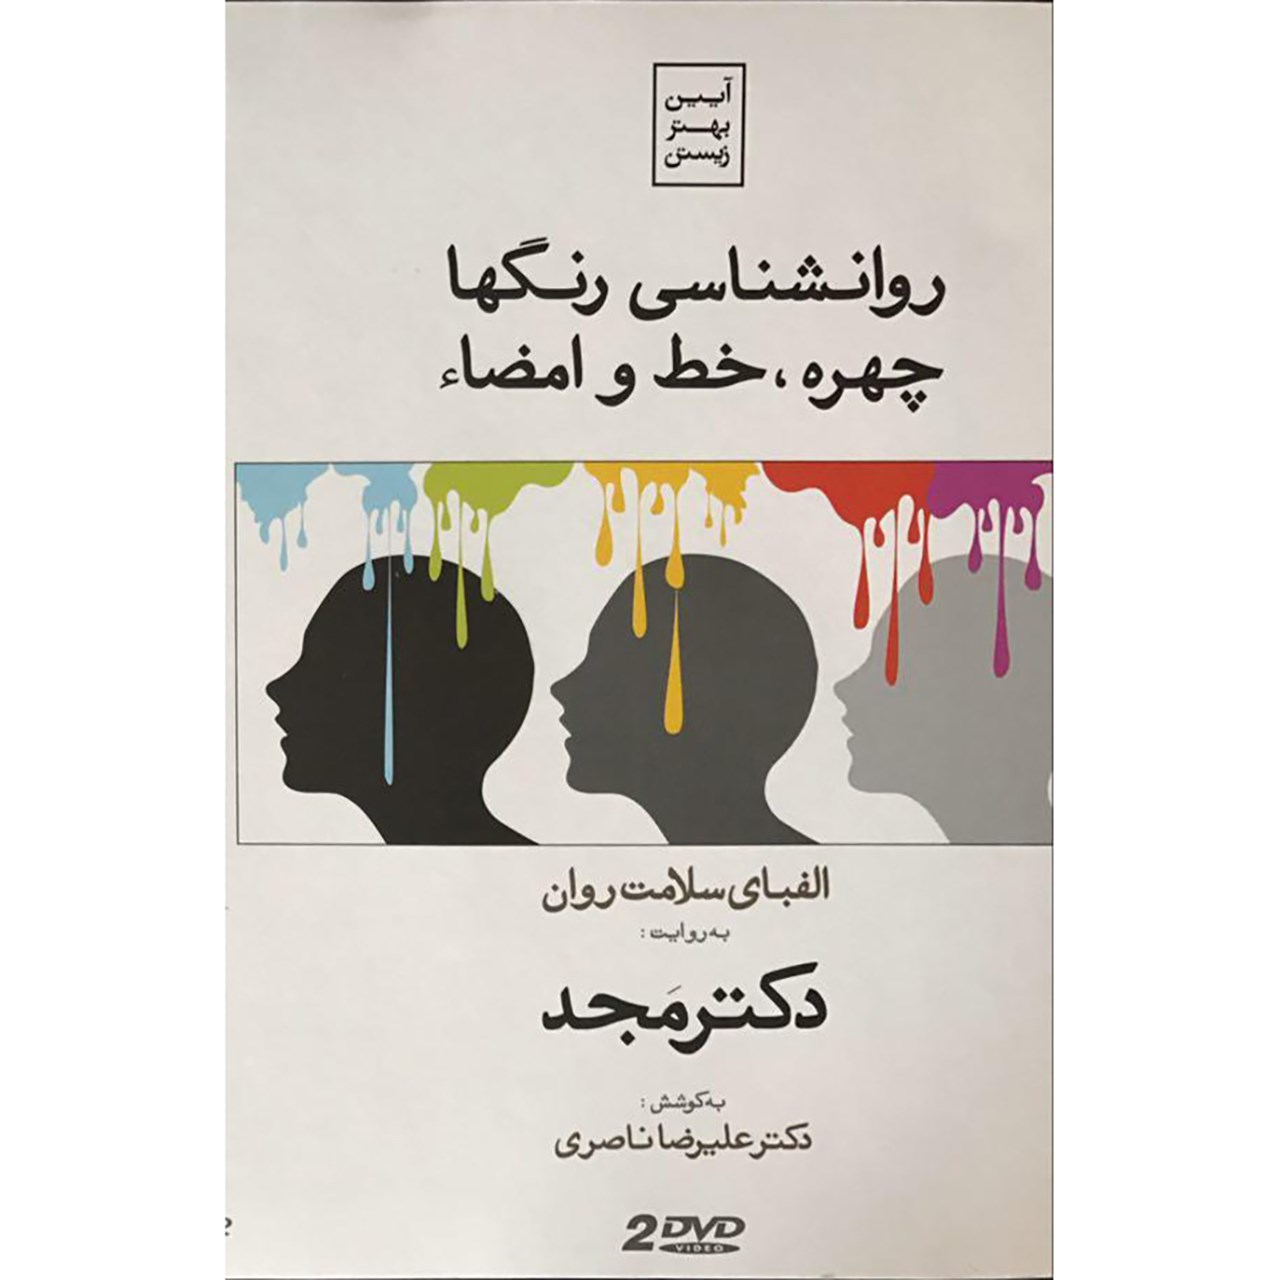 فیلم آموزشی روانشناسی رنگ ها، چهره، خط و امضا اثر محمد مجد